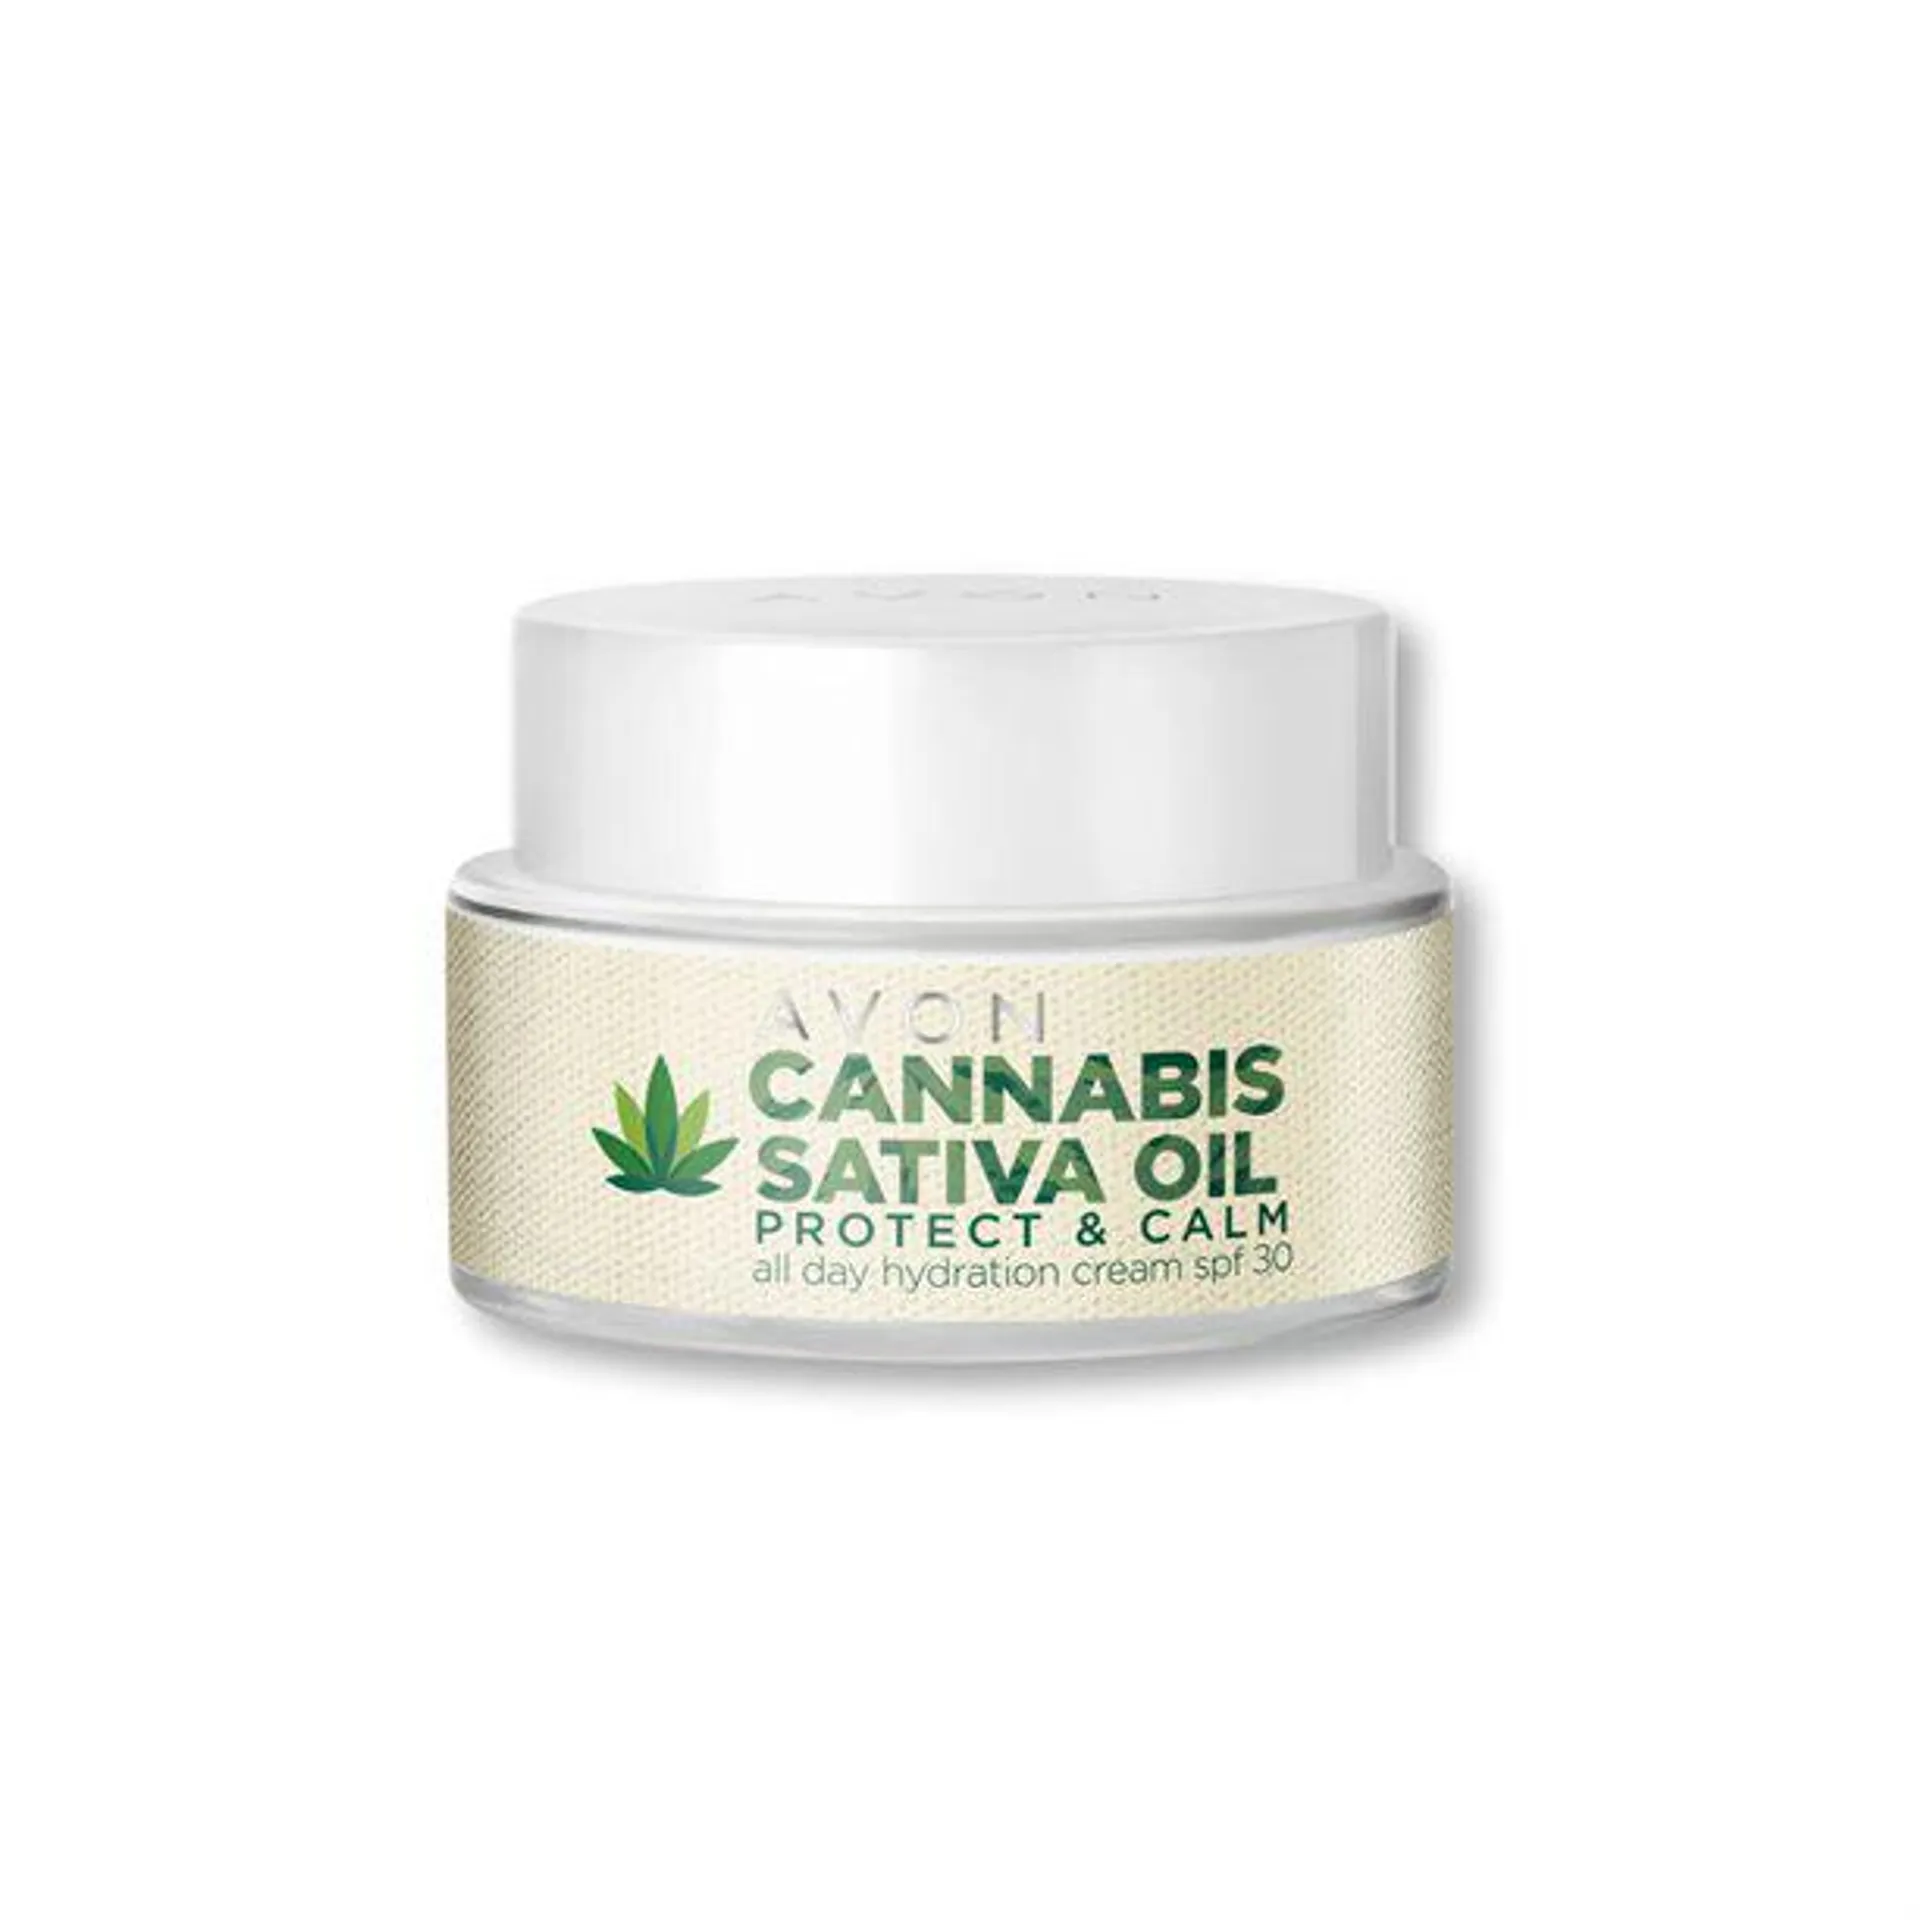 Crema Hidratante SPF 30 Protege y Calma Todo el Día con Aceite de Cannabis Sativa